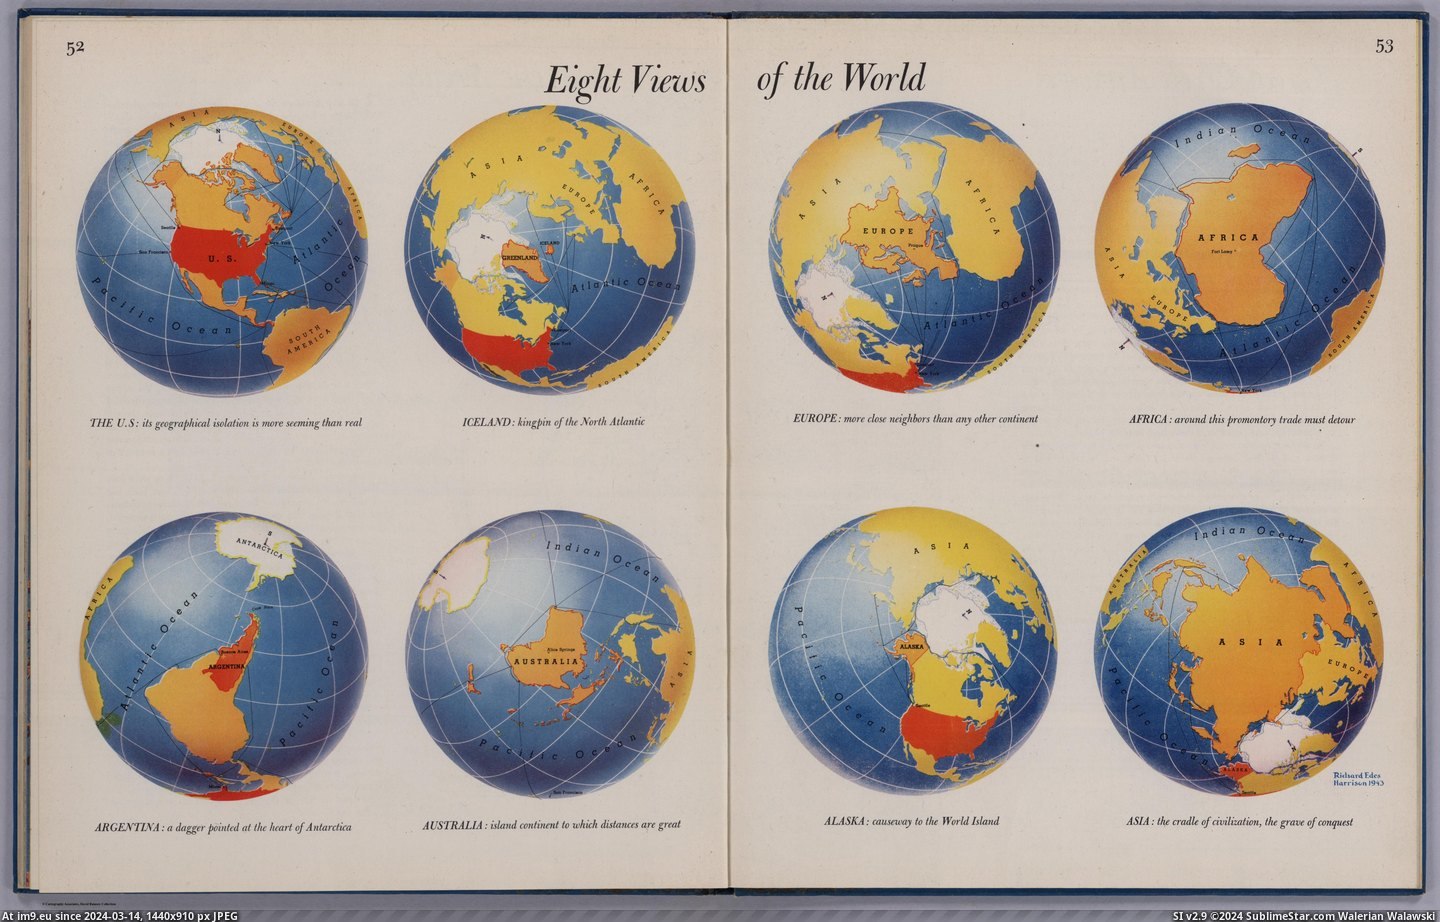 #World #Harrison #Richard [Mapporn] 8 views of the World, by Richard Harrison in 1943 [5509x3495] Pic. (Bild von album My r/MAPS favs))